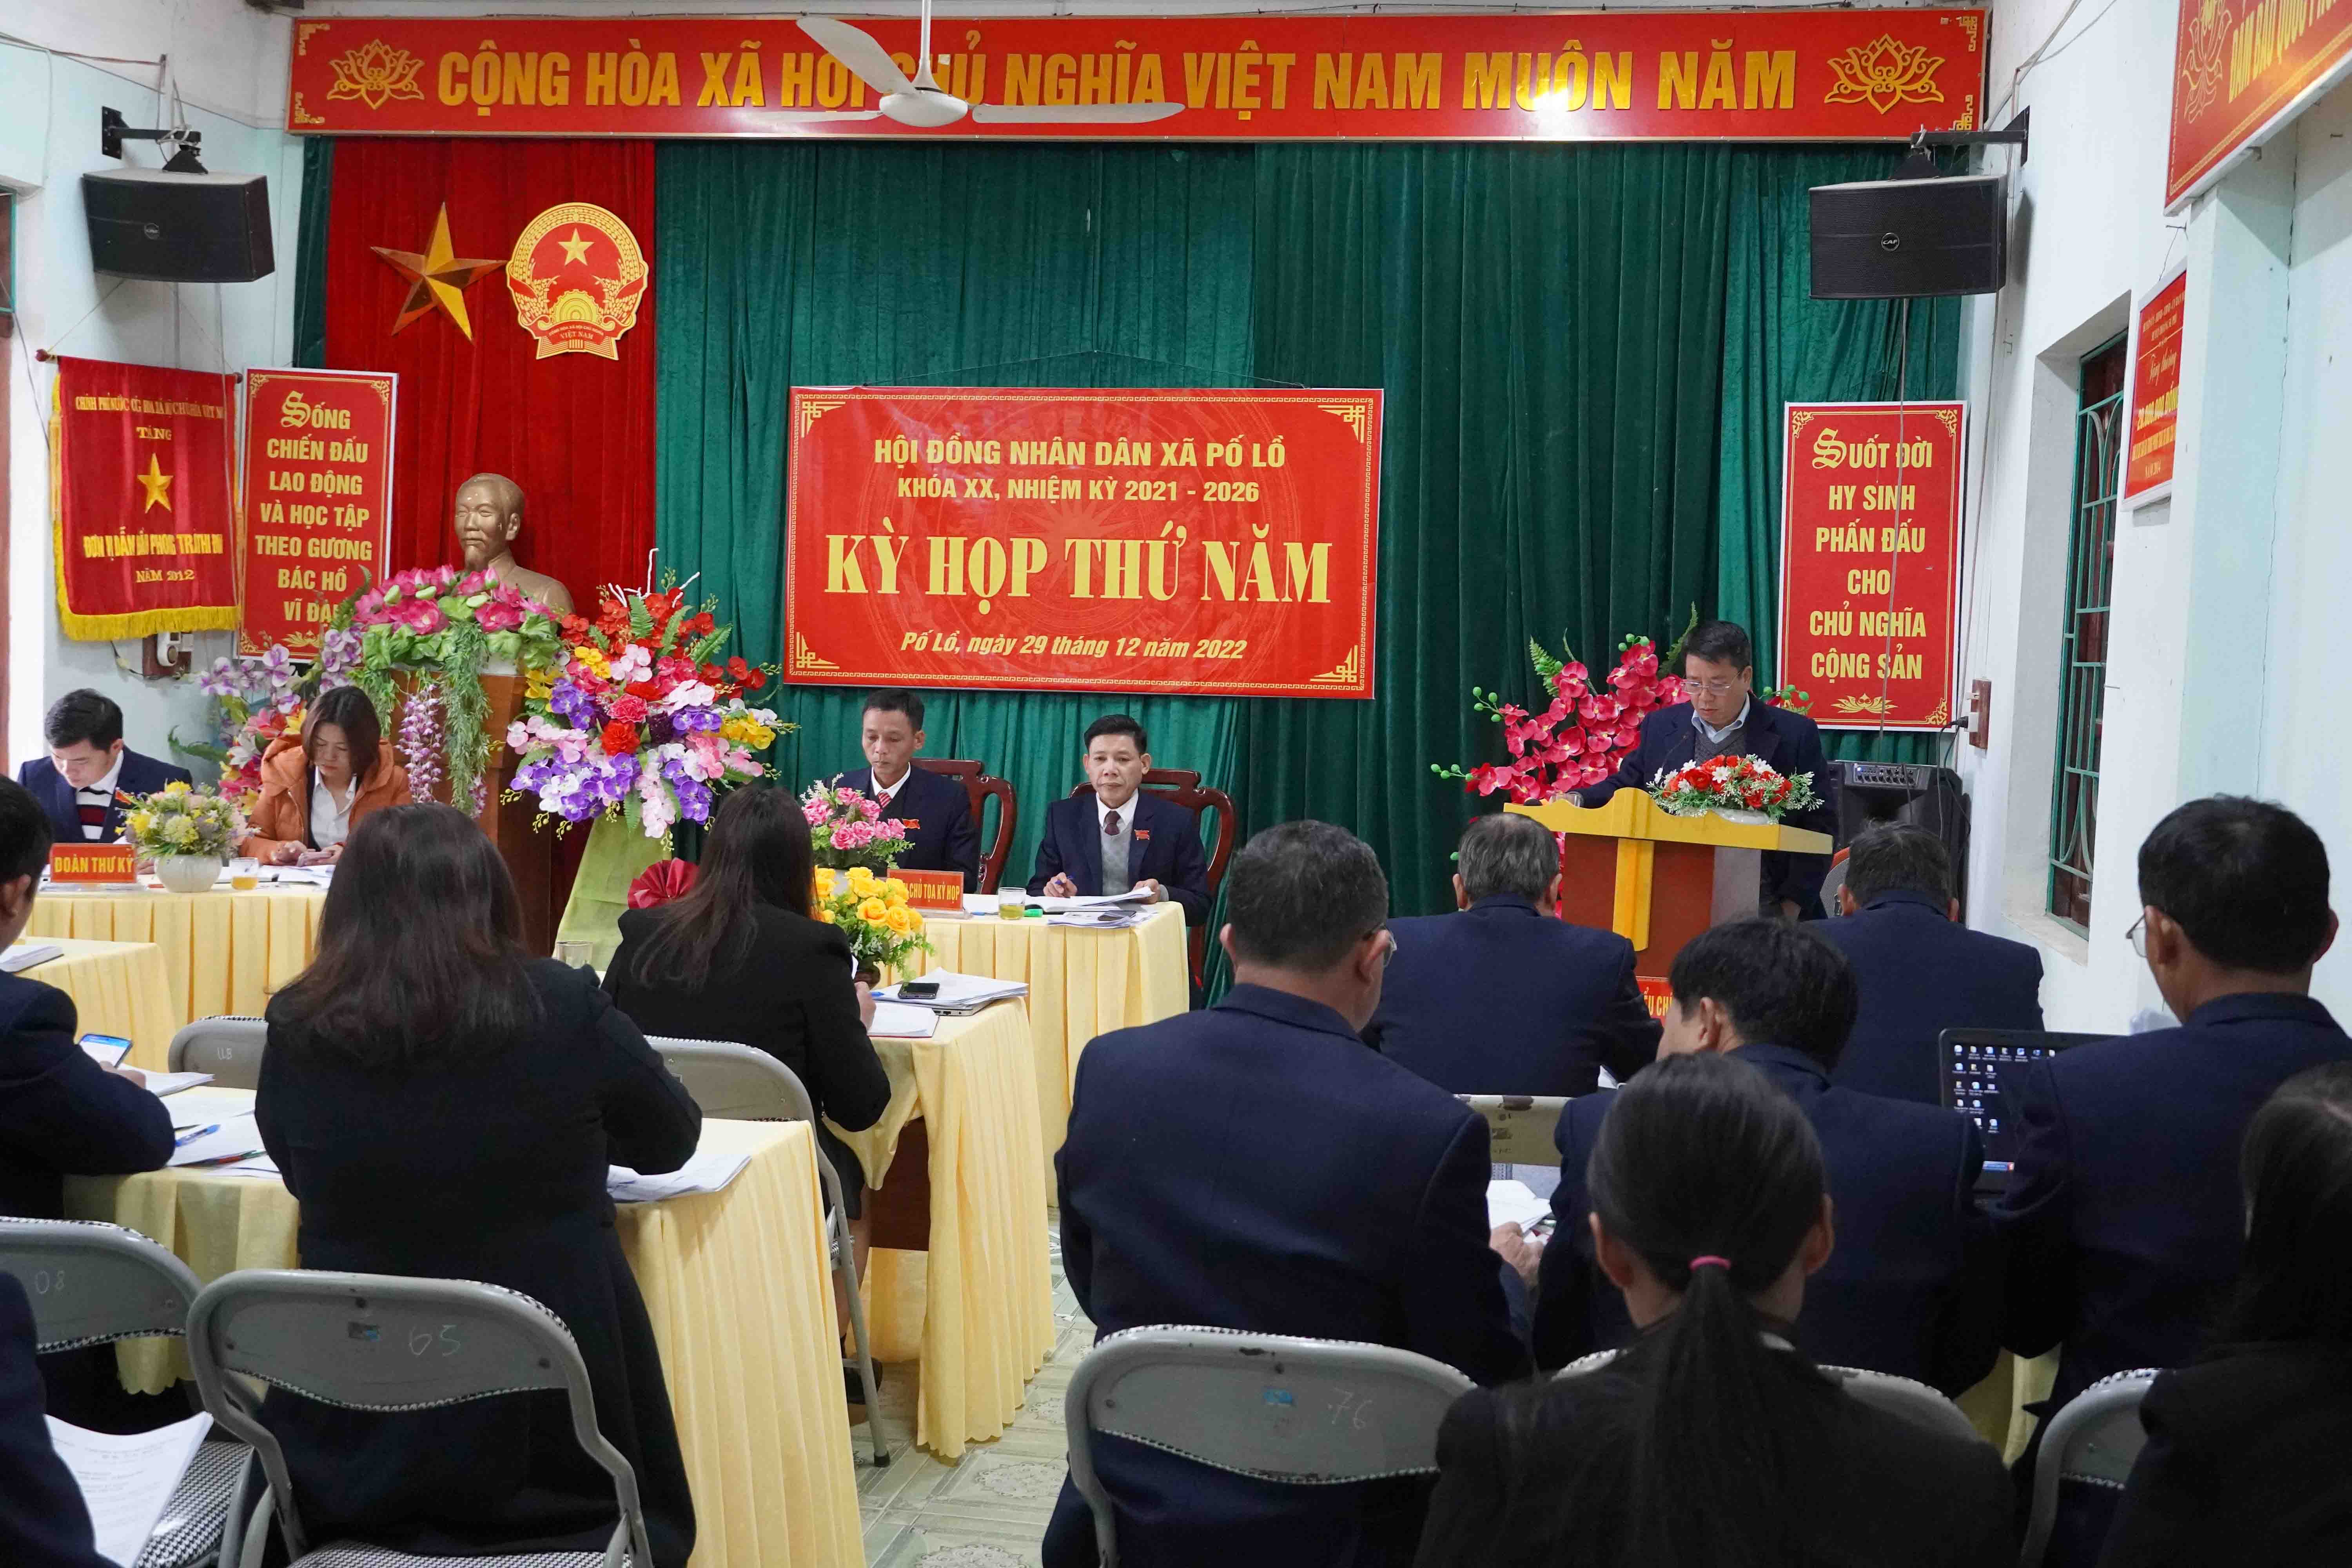 Chủ tịch HĐND huyện dự kỳ họp thứ 5 HĐND xã Pố Lồ, khóa XX, nhiệm kỳ 2021 - 2026